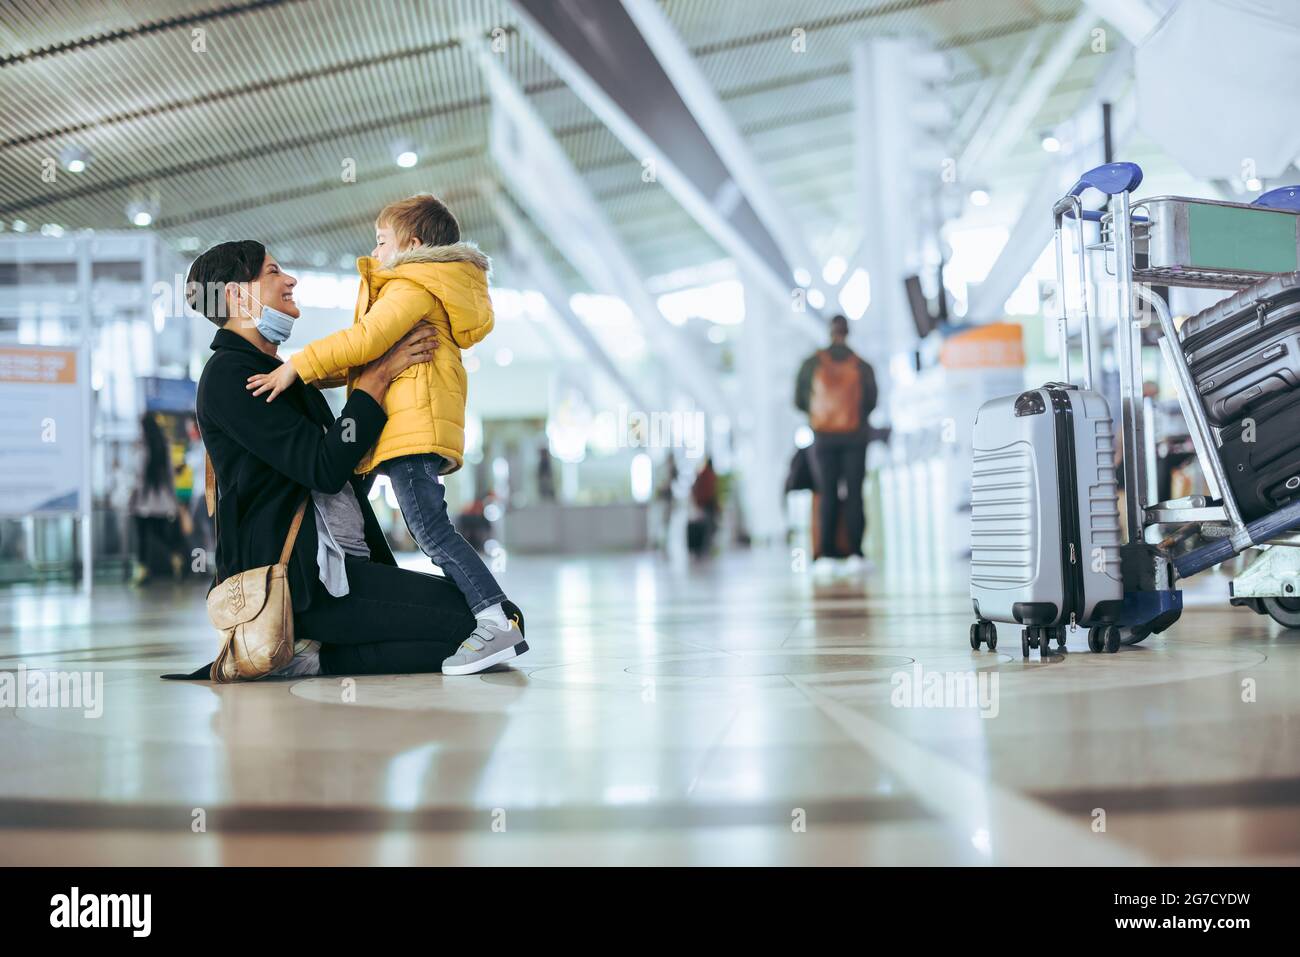 Junge trifft seine Mutter am Flughafen nach langer Trennung während einer Pandemie. Glückliche Frau, die bei der Ankunft am Flughafen den Sohn trifft. Stockfoto